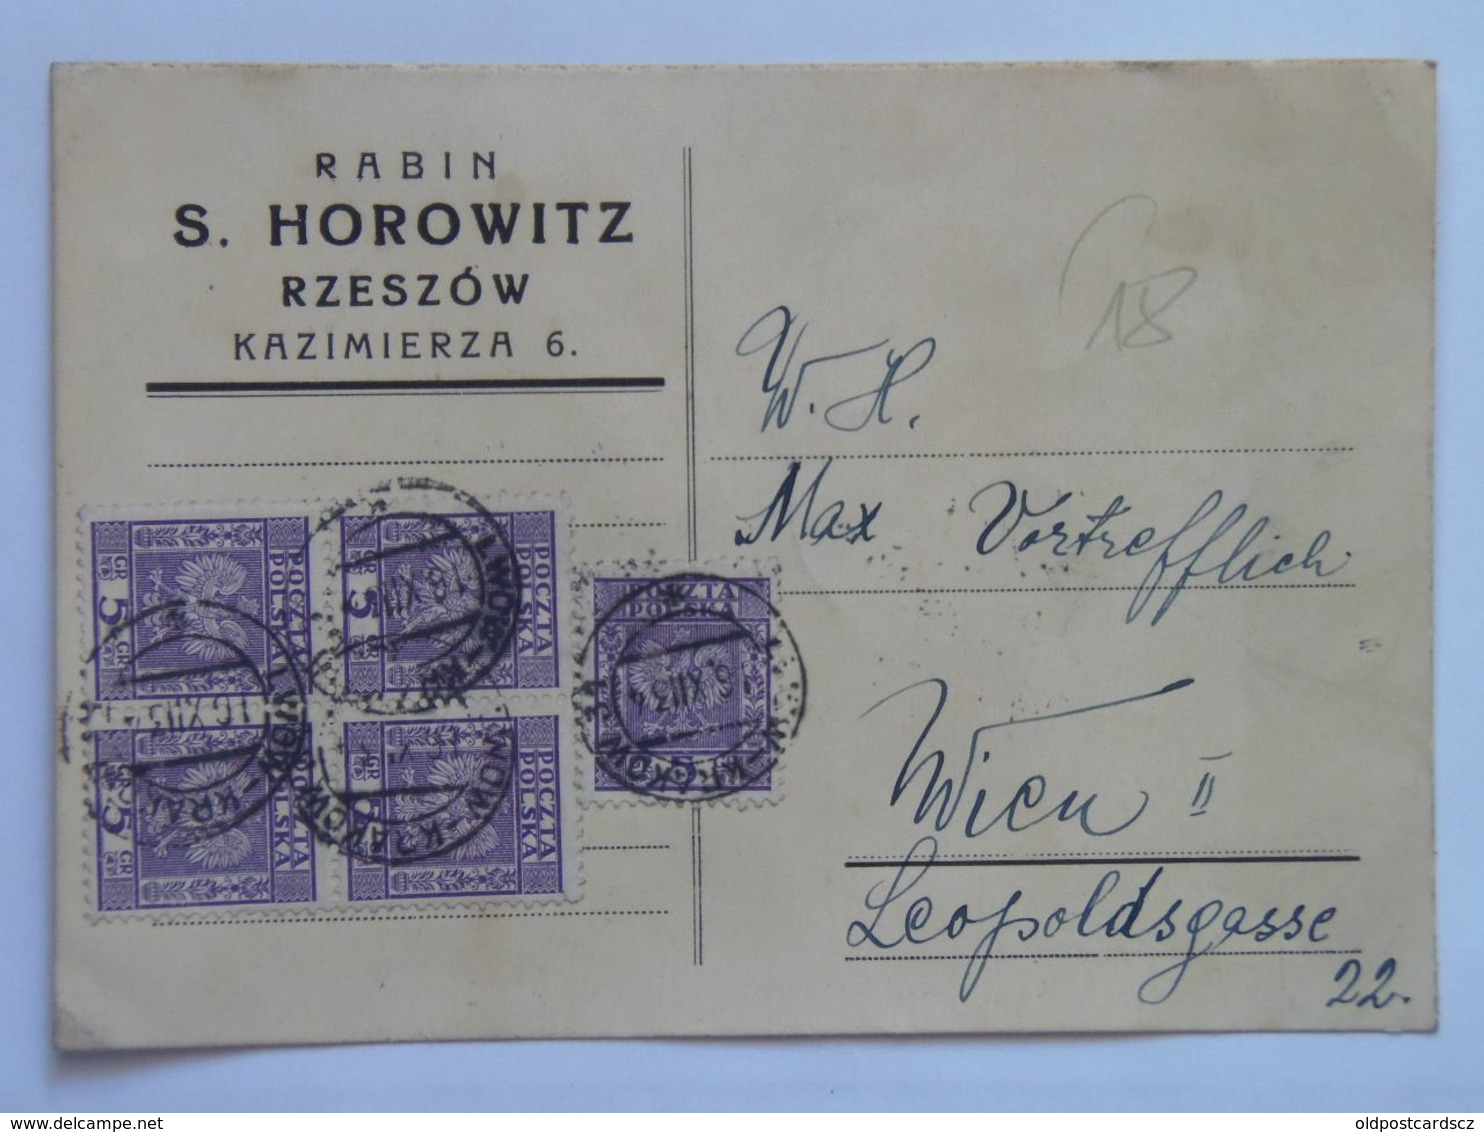 92 Rabin S. Horowitz Rzeszow Kazimierza 1934 - Polen